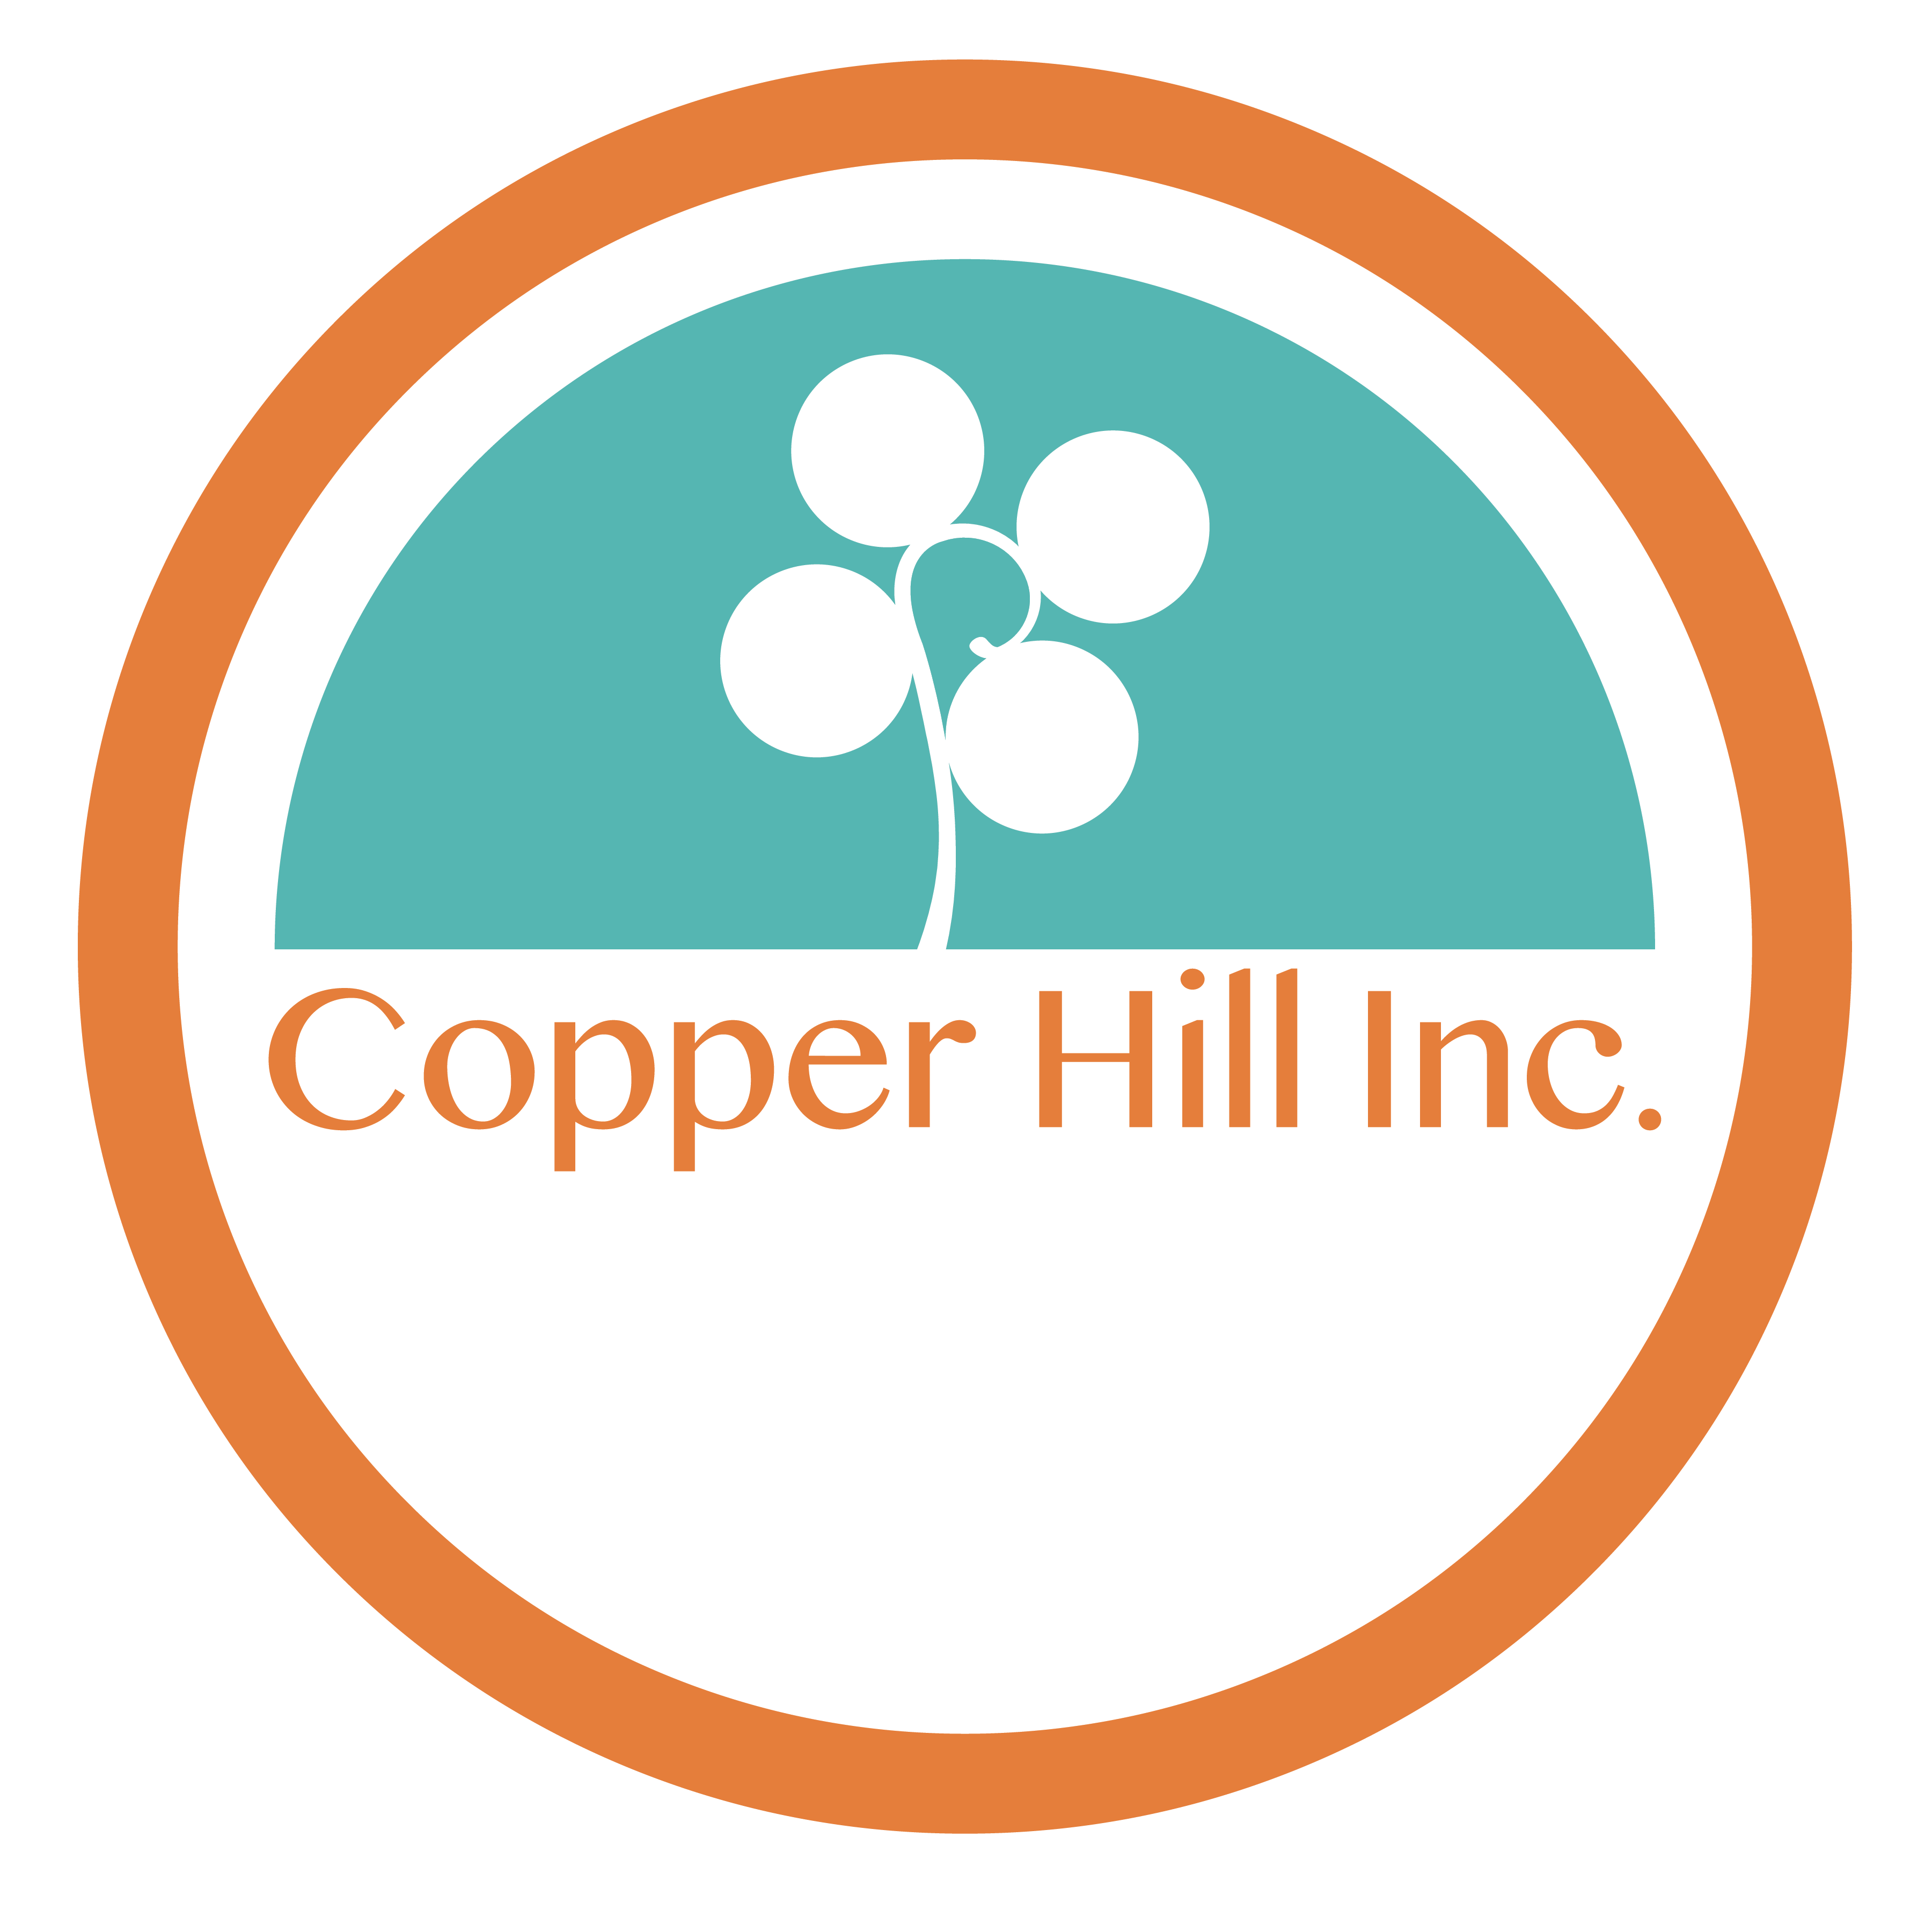 Copper Hill Inc.